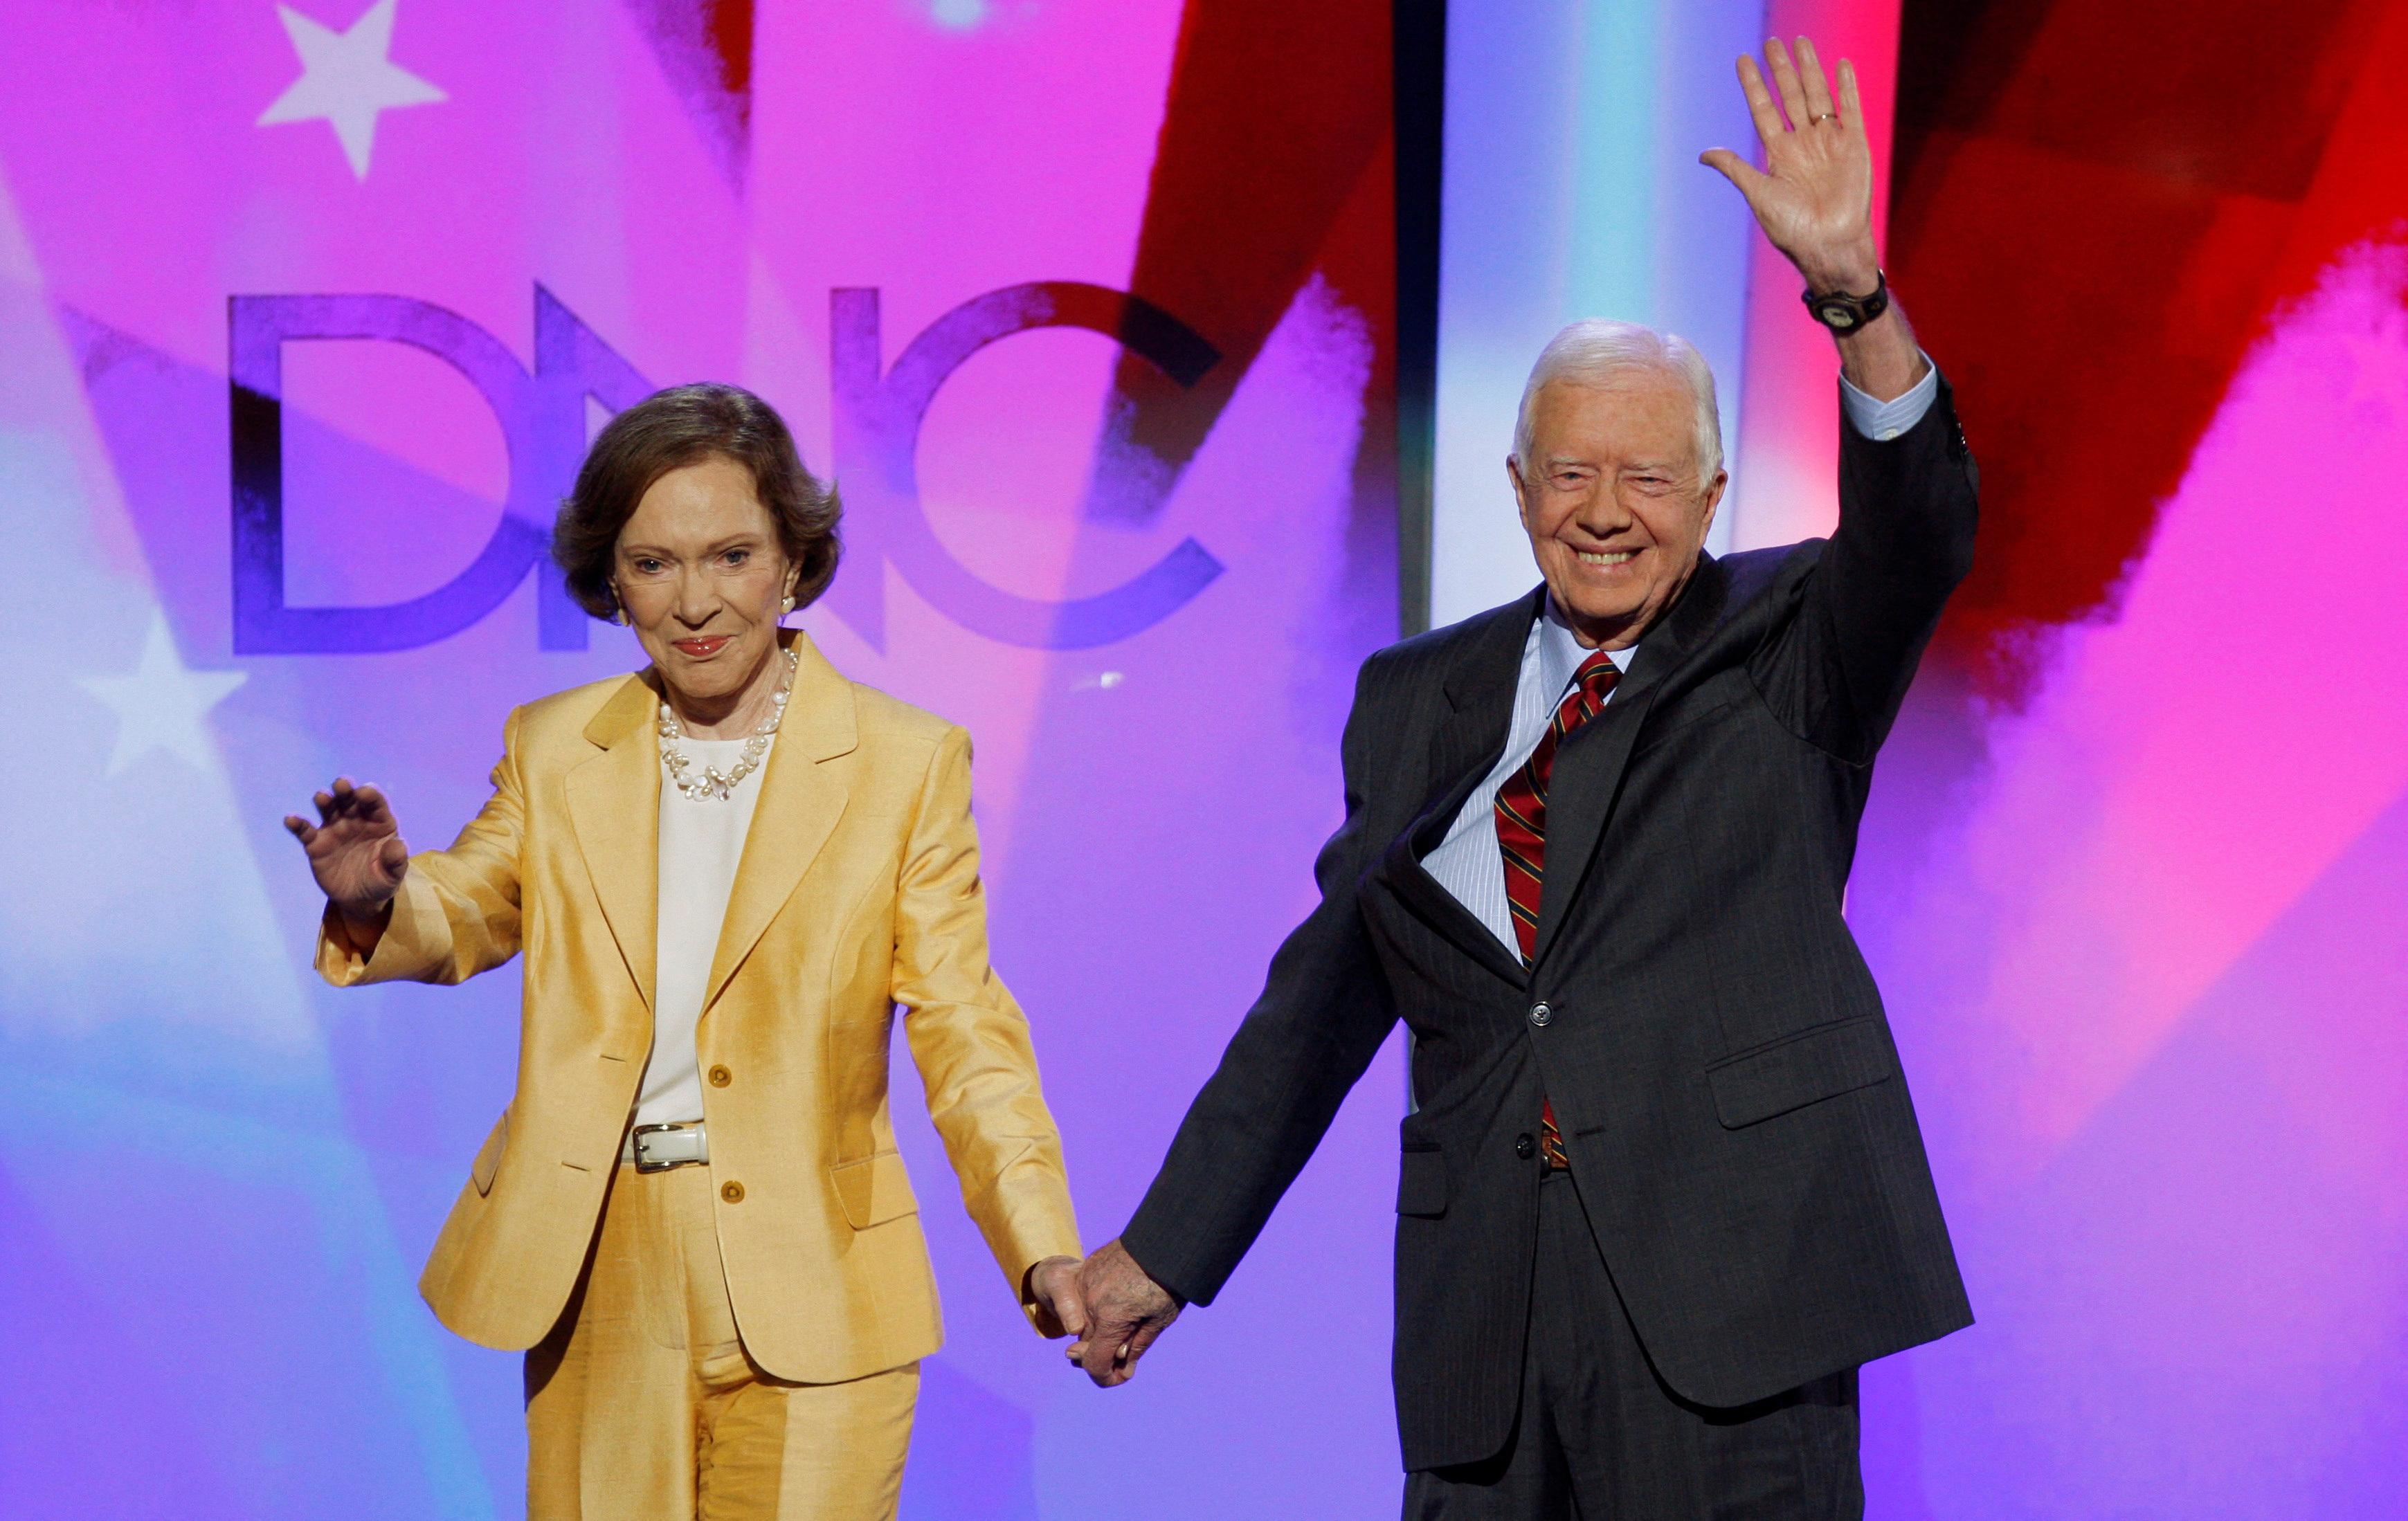 Former U.S. President Carter and former first lady Rosalynn arrive onstage in Denver